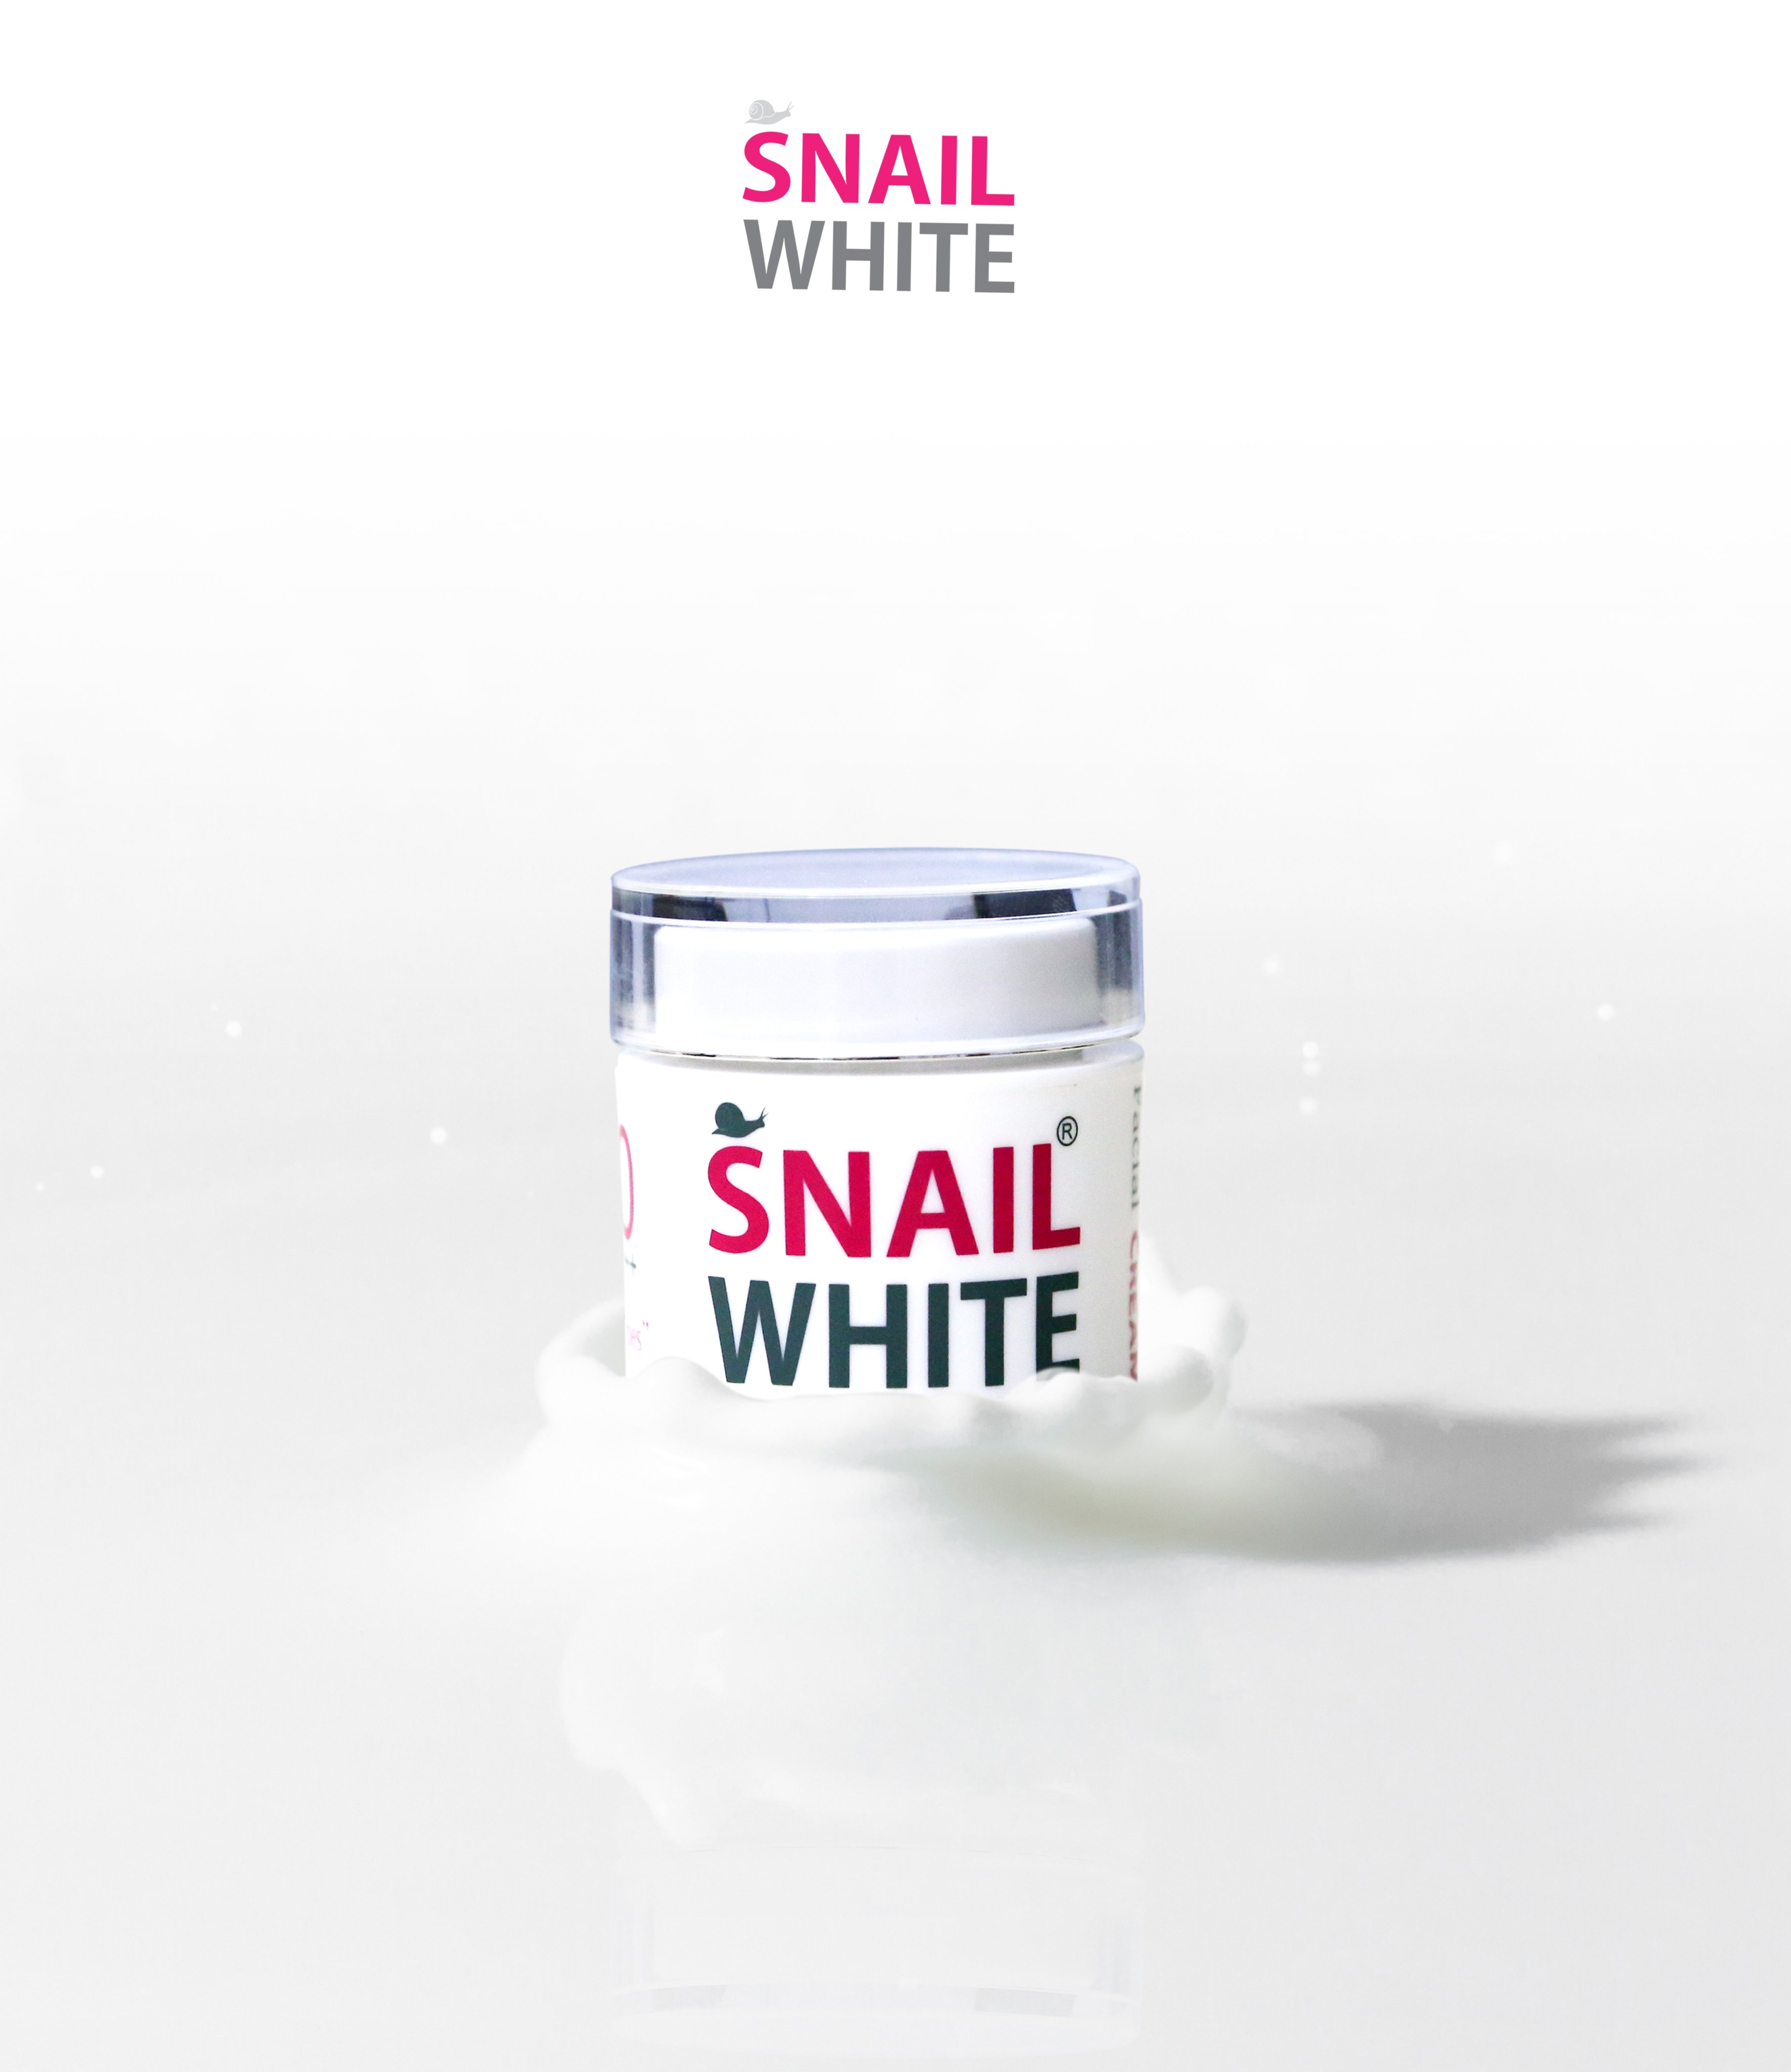 Combo kem dưỡng body cream và kem dưỡng da mặt snail white